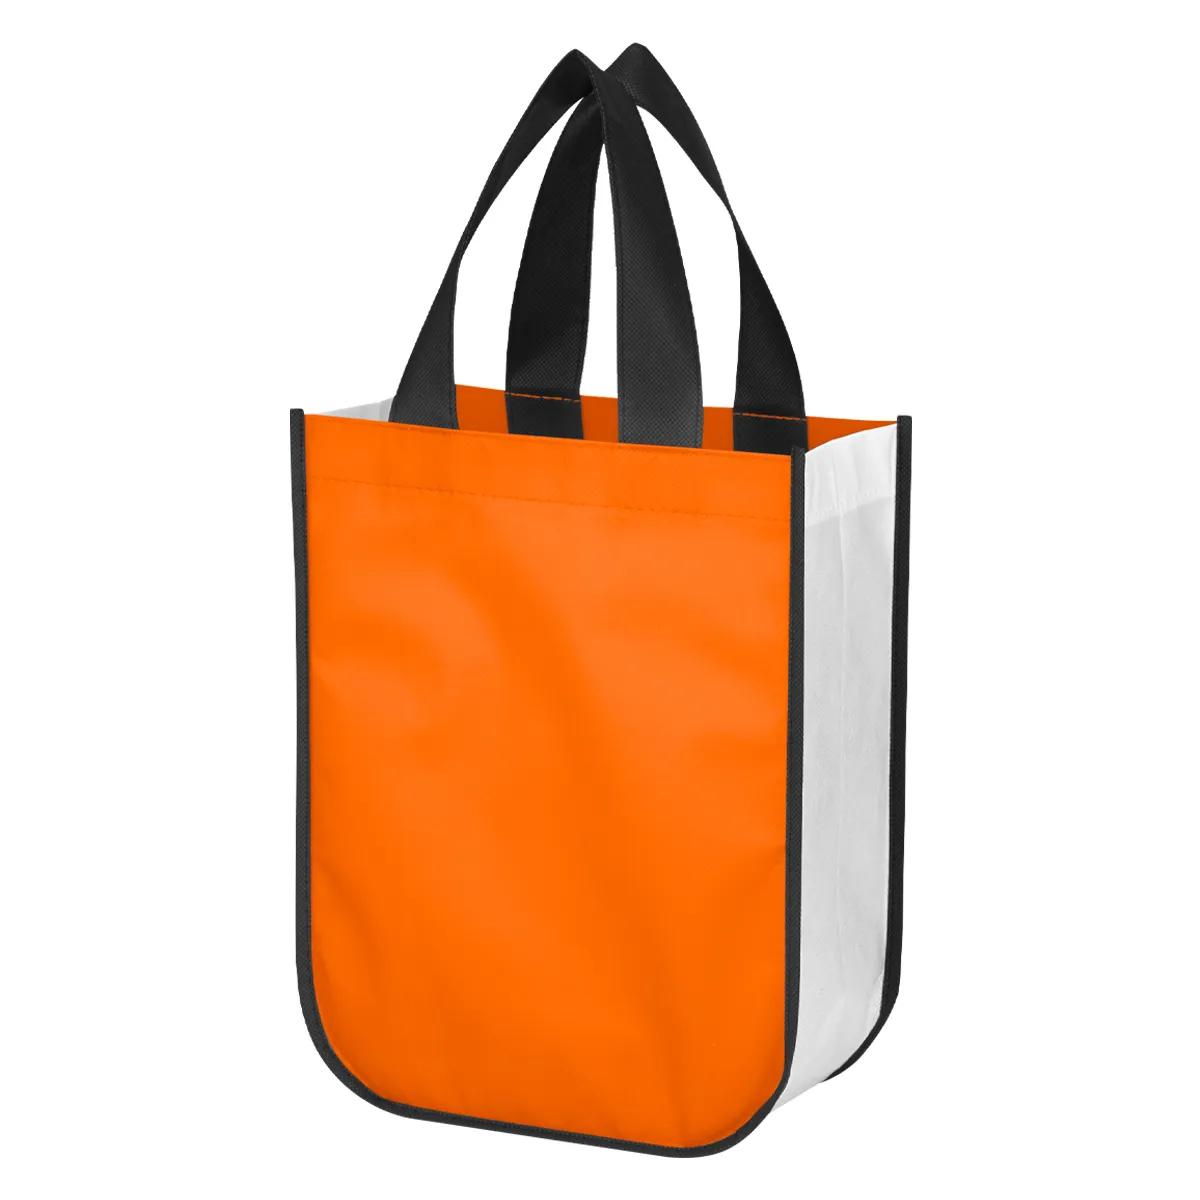 Shiny Non-Woven Shopper Tote Bag 9 of 10